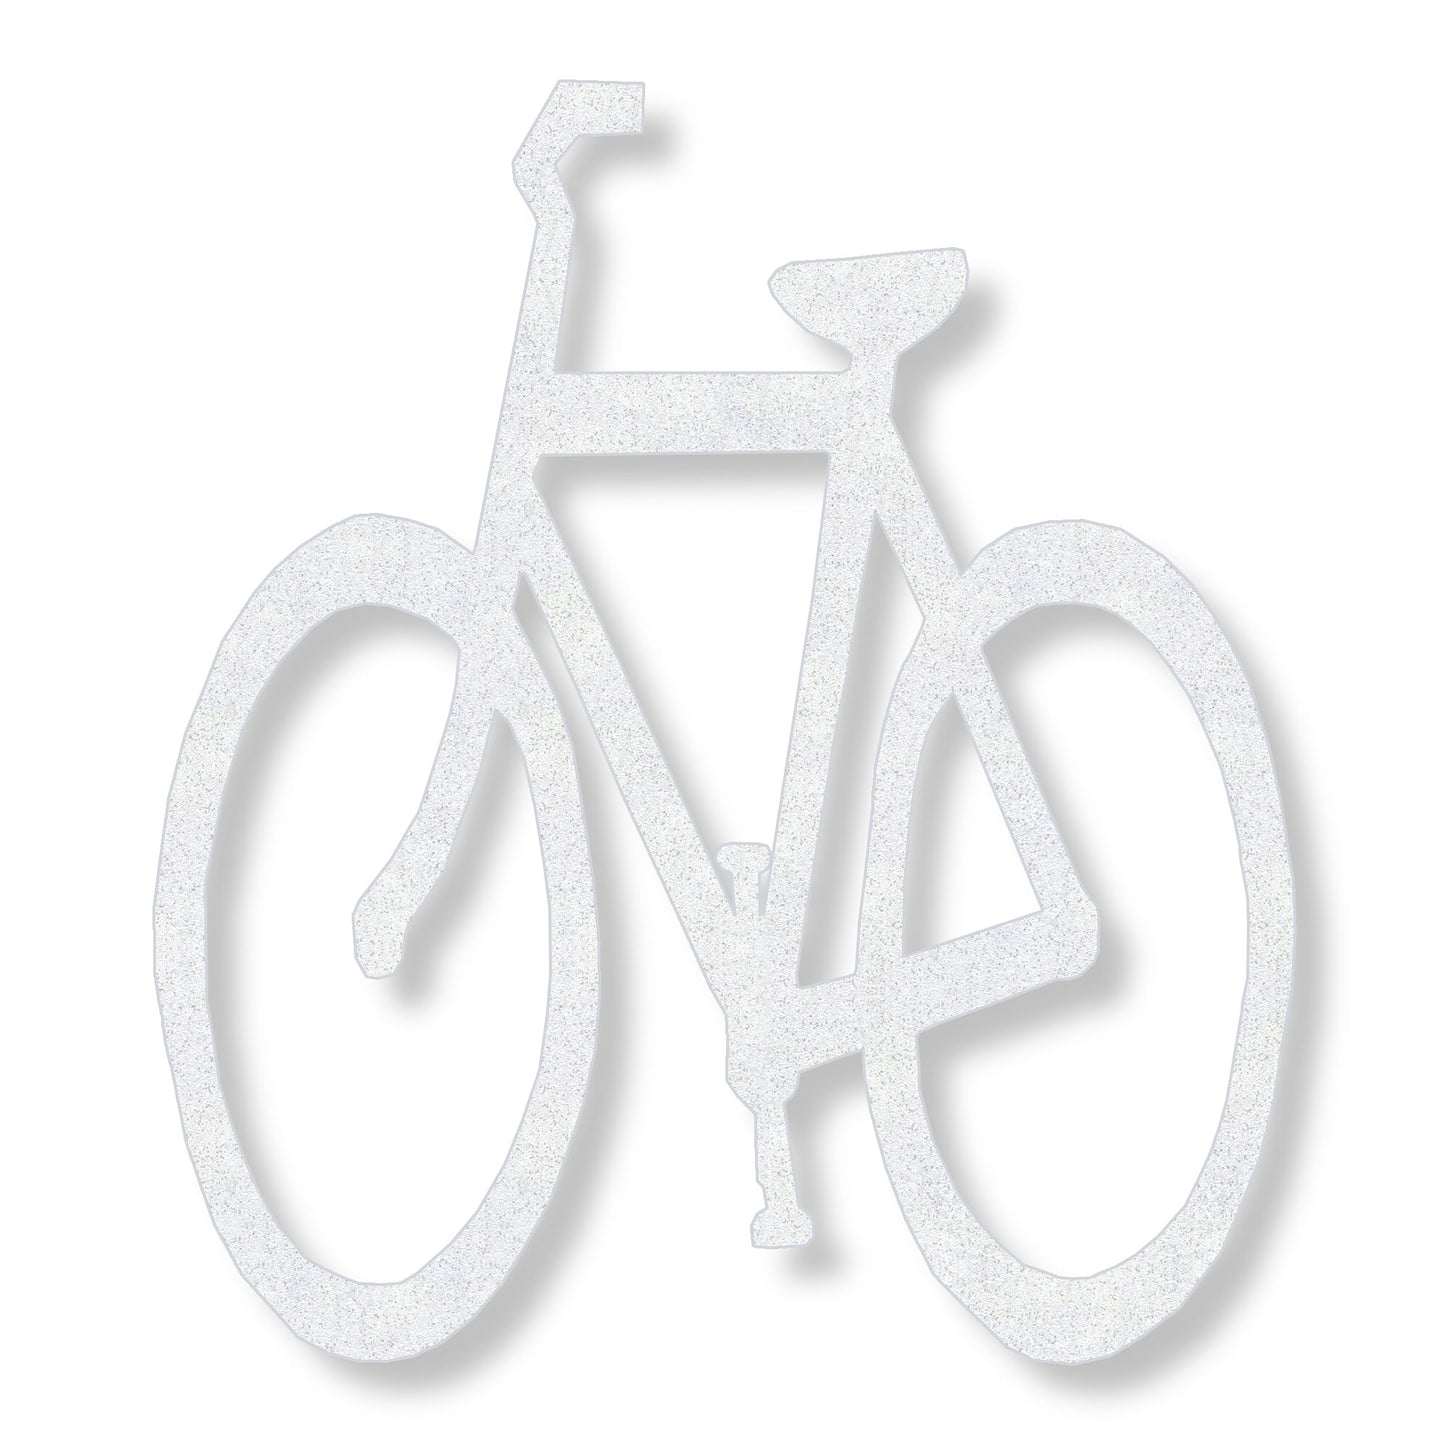 White bicycle symbol